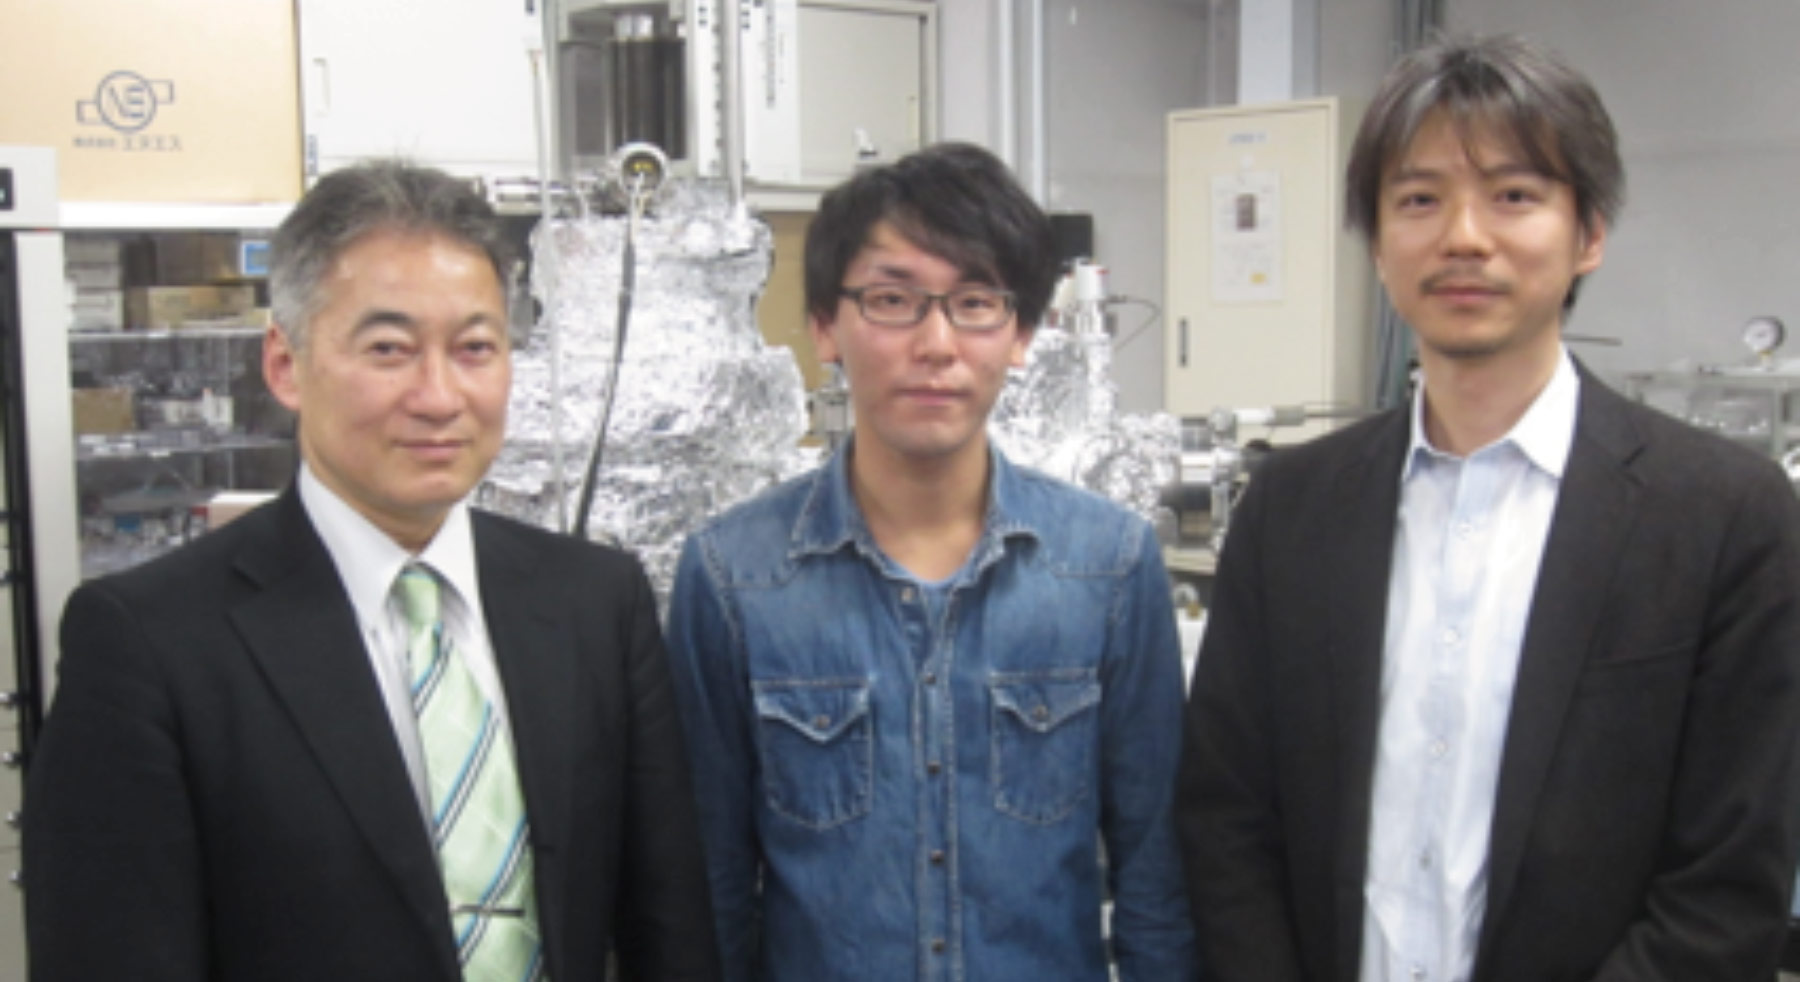 右から、東京大学大学院工学系研究科准教授の千葉さん、大学院生の太田さん、村田製作所シニアプリンシパルリサーチャーの安藤さん